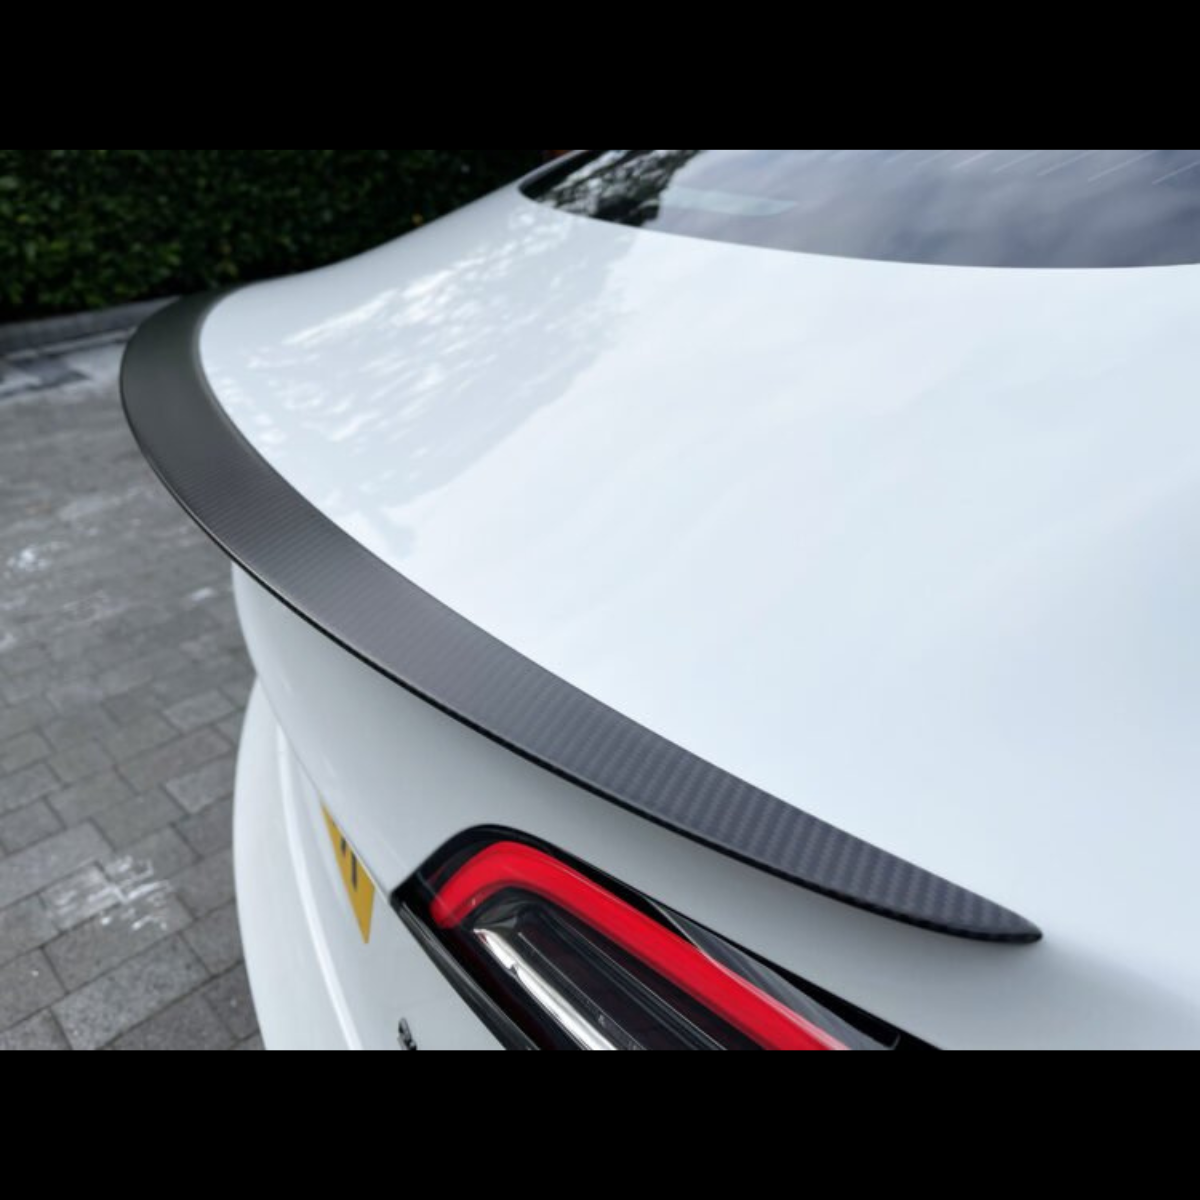 Tesla Model 3 Performance Achterspoiler Carbon Auto Styling Exterieur Accessoires Spoiler Nederland België